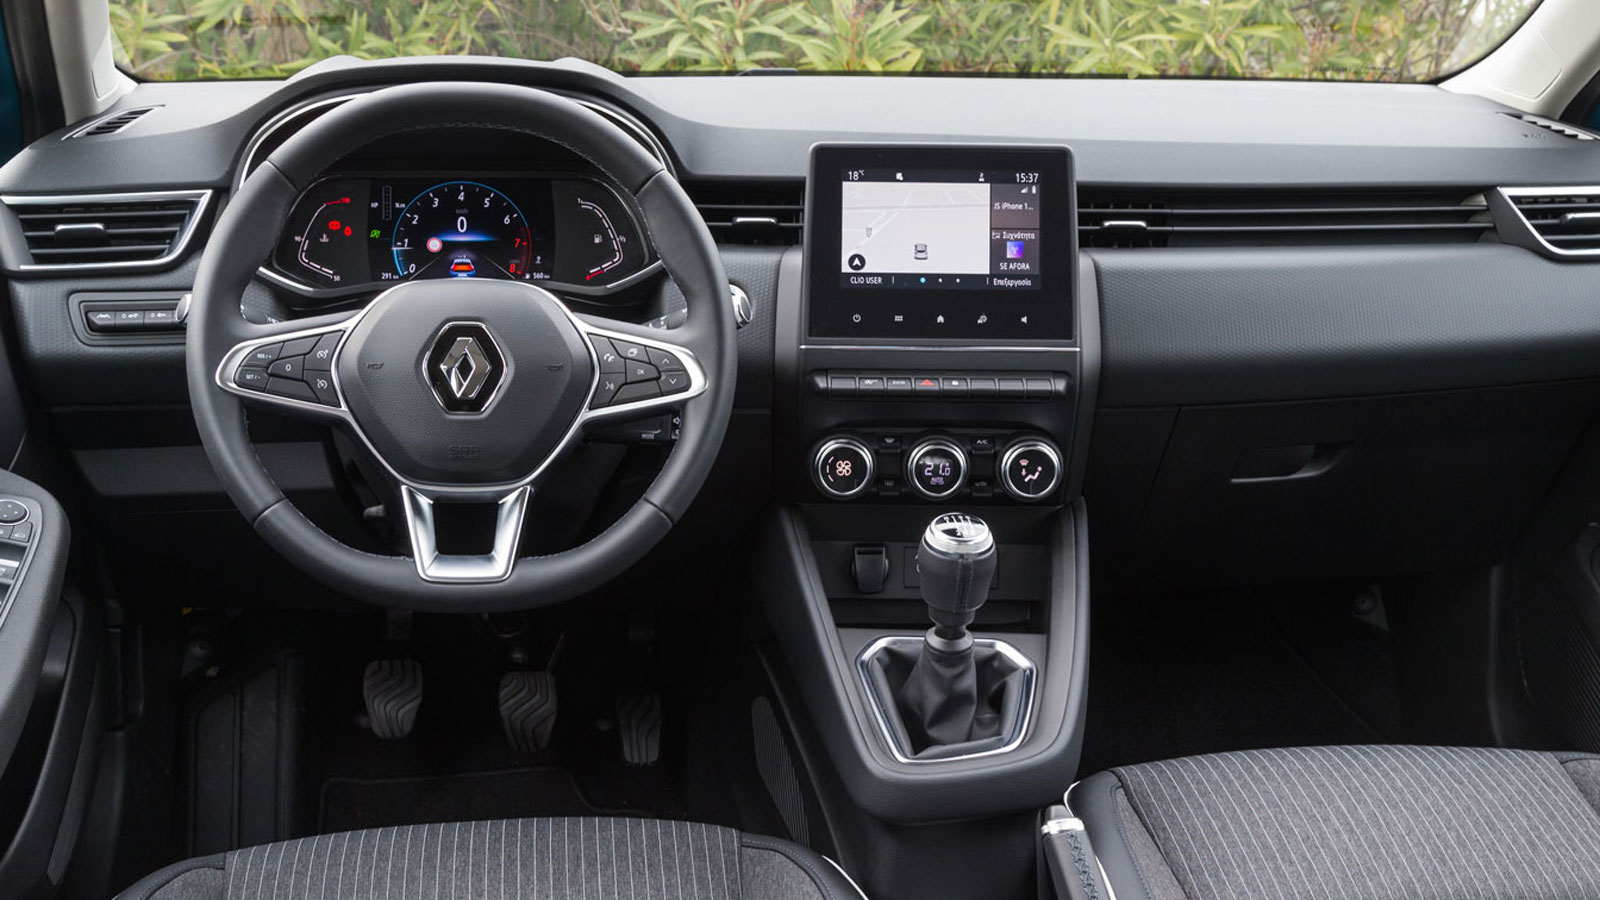 Citroen C3 diesel VS Renault Clio diesel: Ποιο ξεχωρίζει σε εξοπλισμό ασφαλείας και άνεσης;